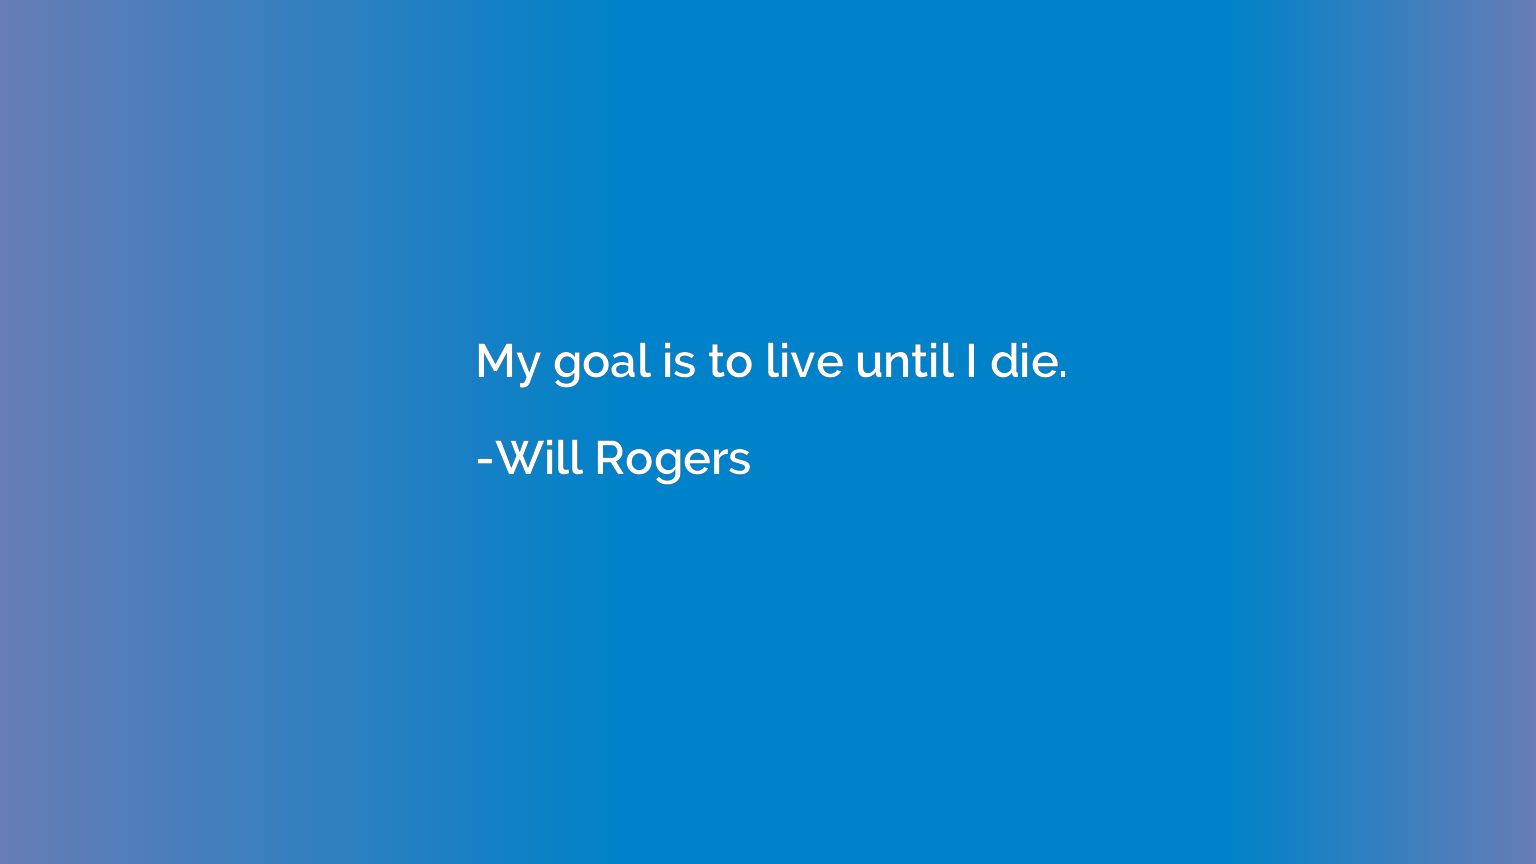 My goal is to live until I die.